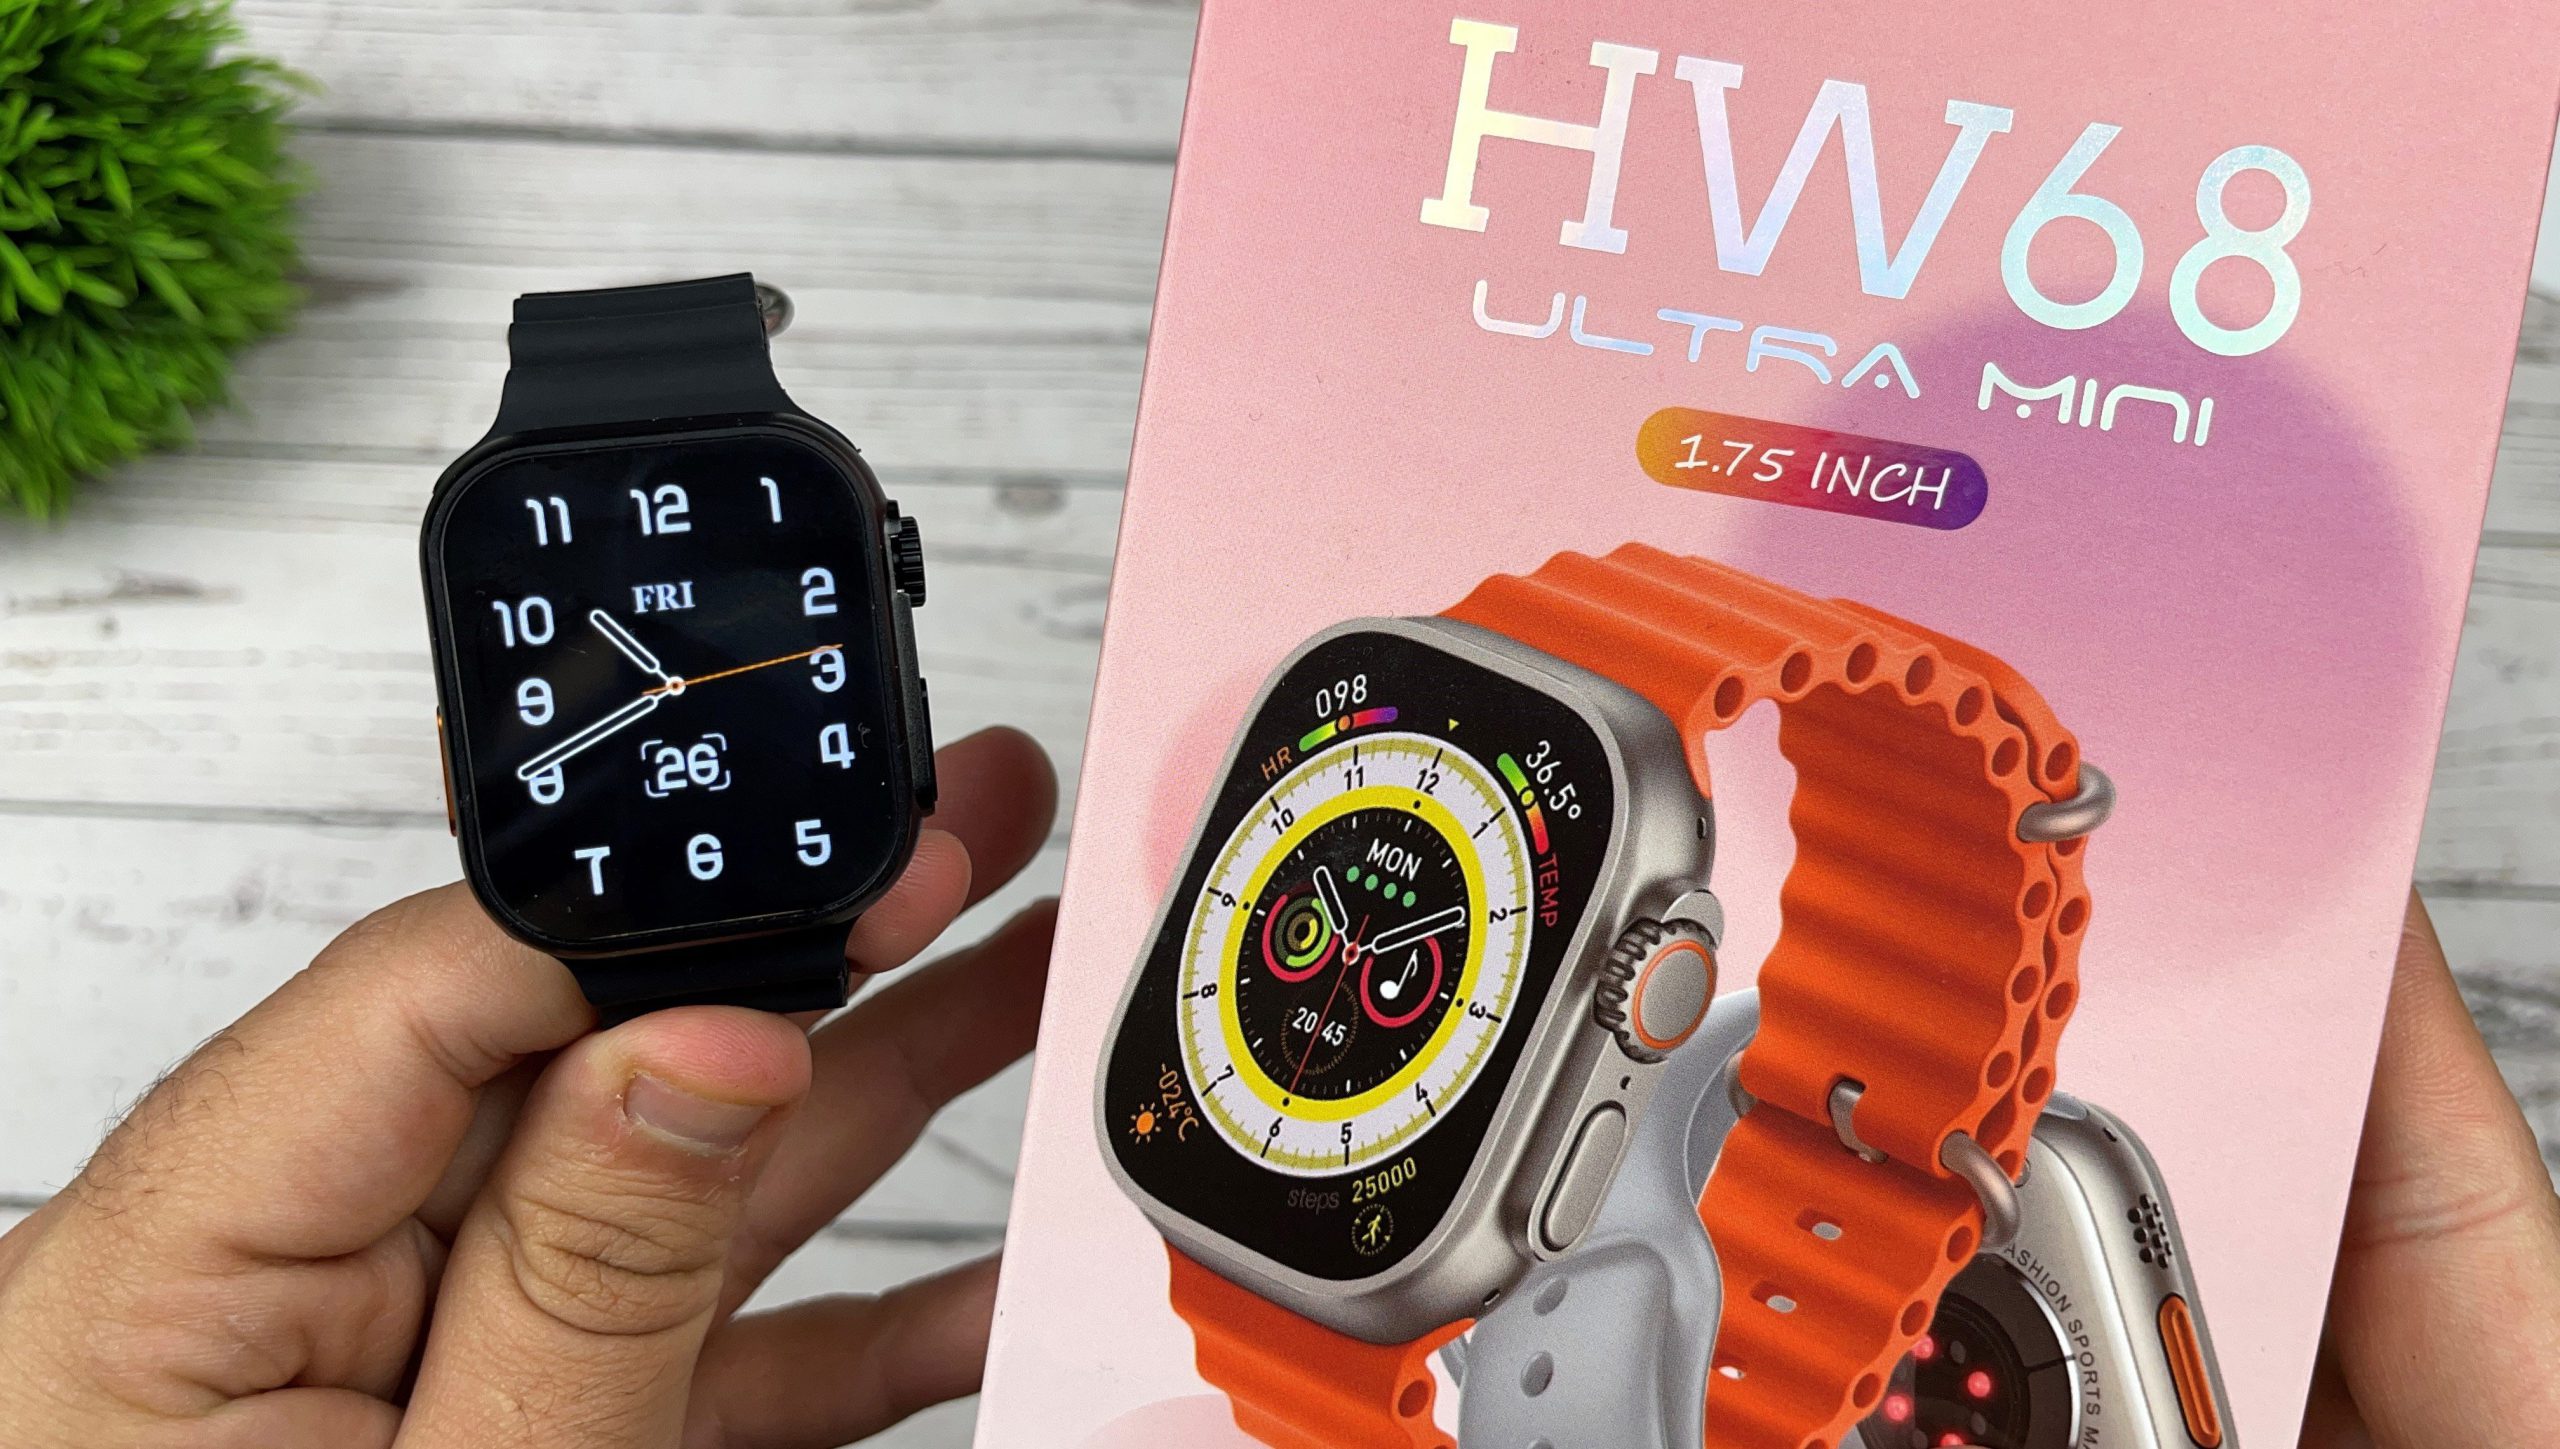 ساعت هوشمند مدل HW68 Ultra Mini – فروشگاه ارزونچی